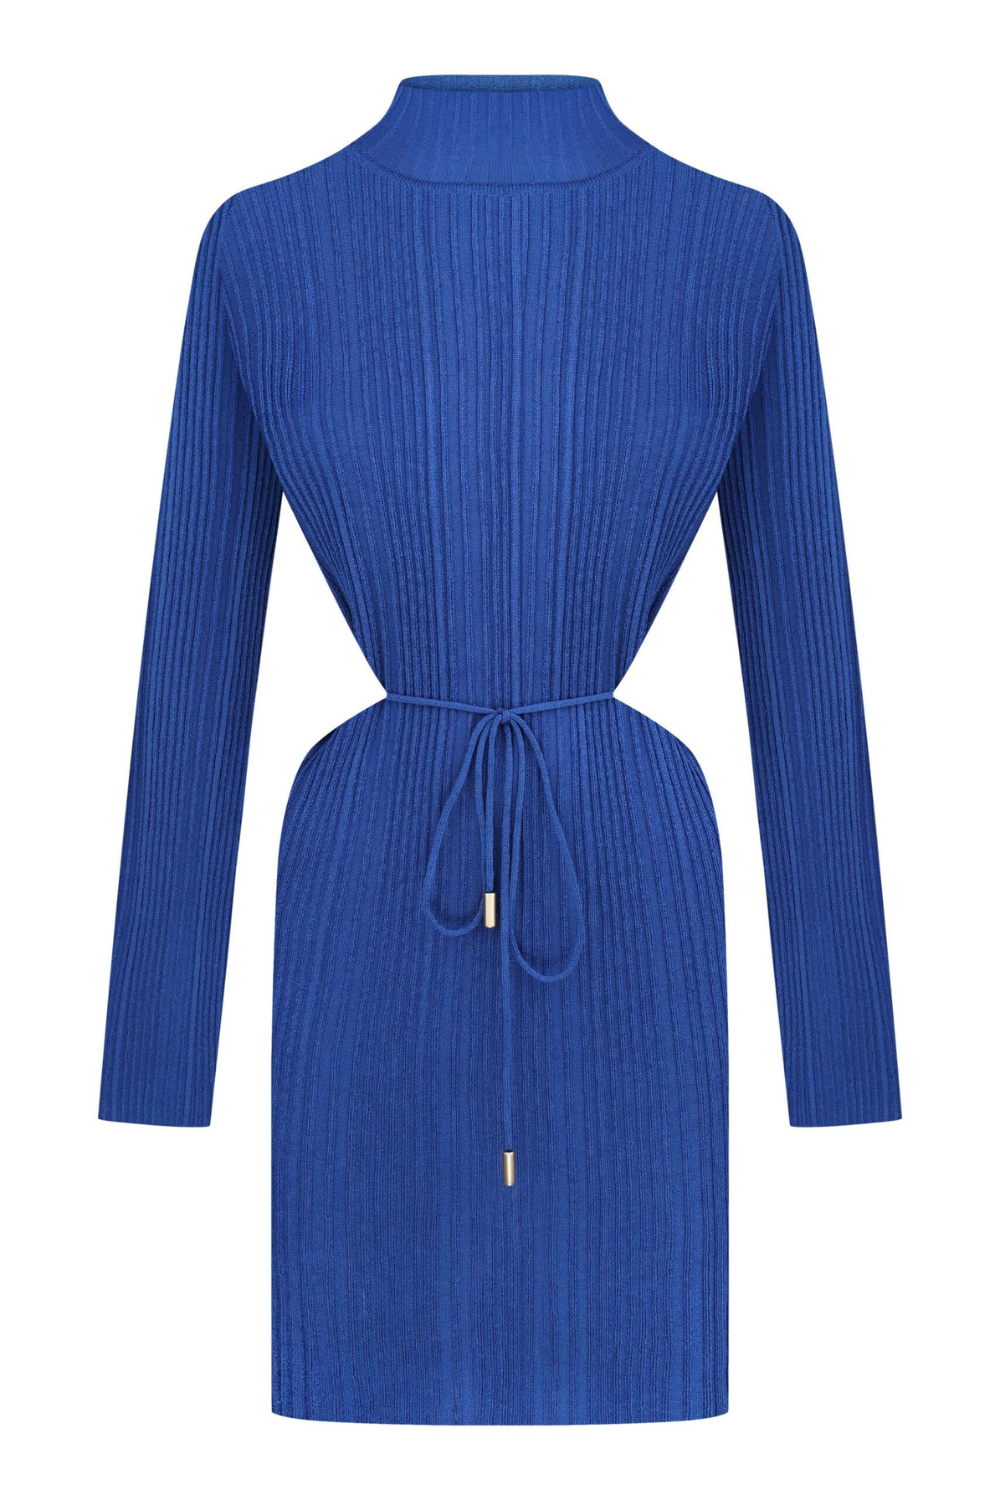 Трикотажна сукня темно-синя (K.KVIT, T.MOSCA) PDJ23-03